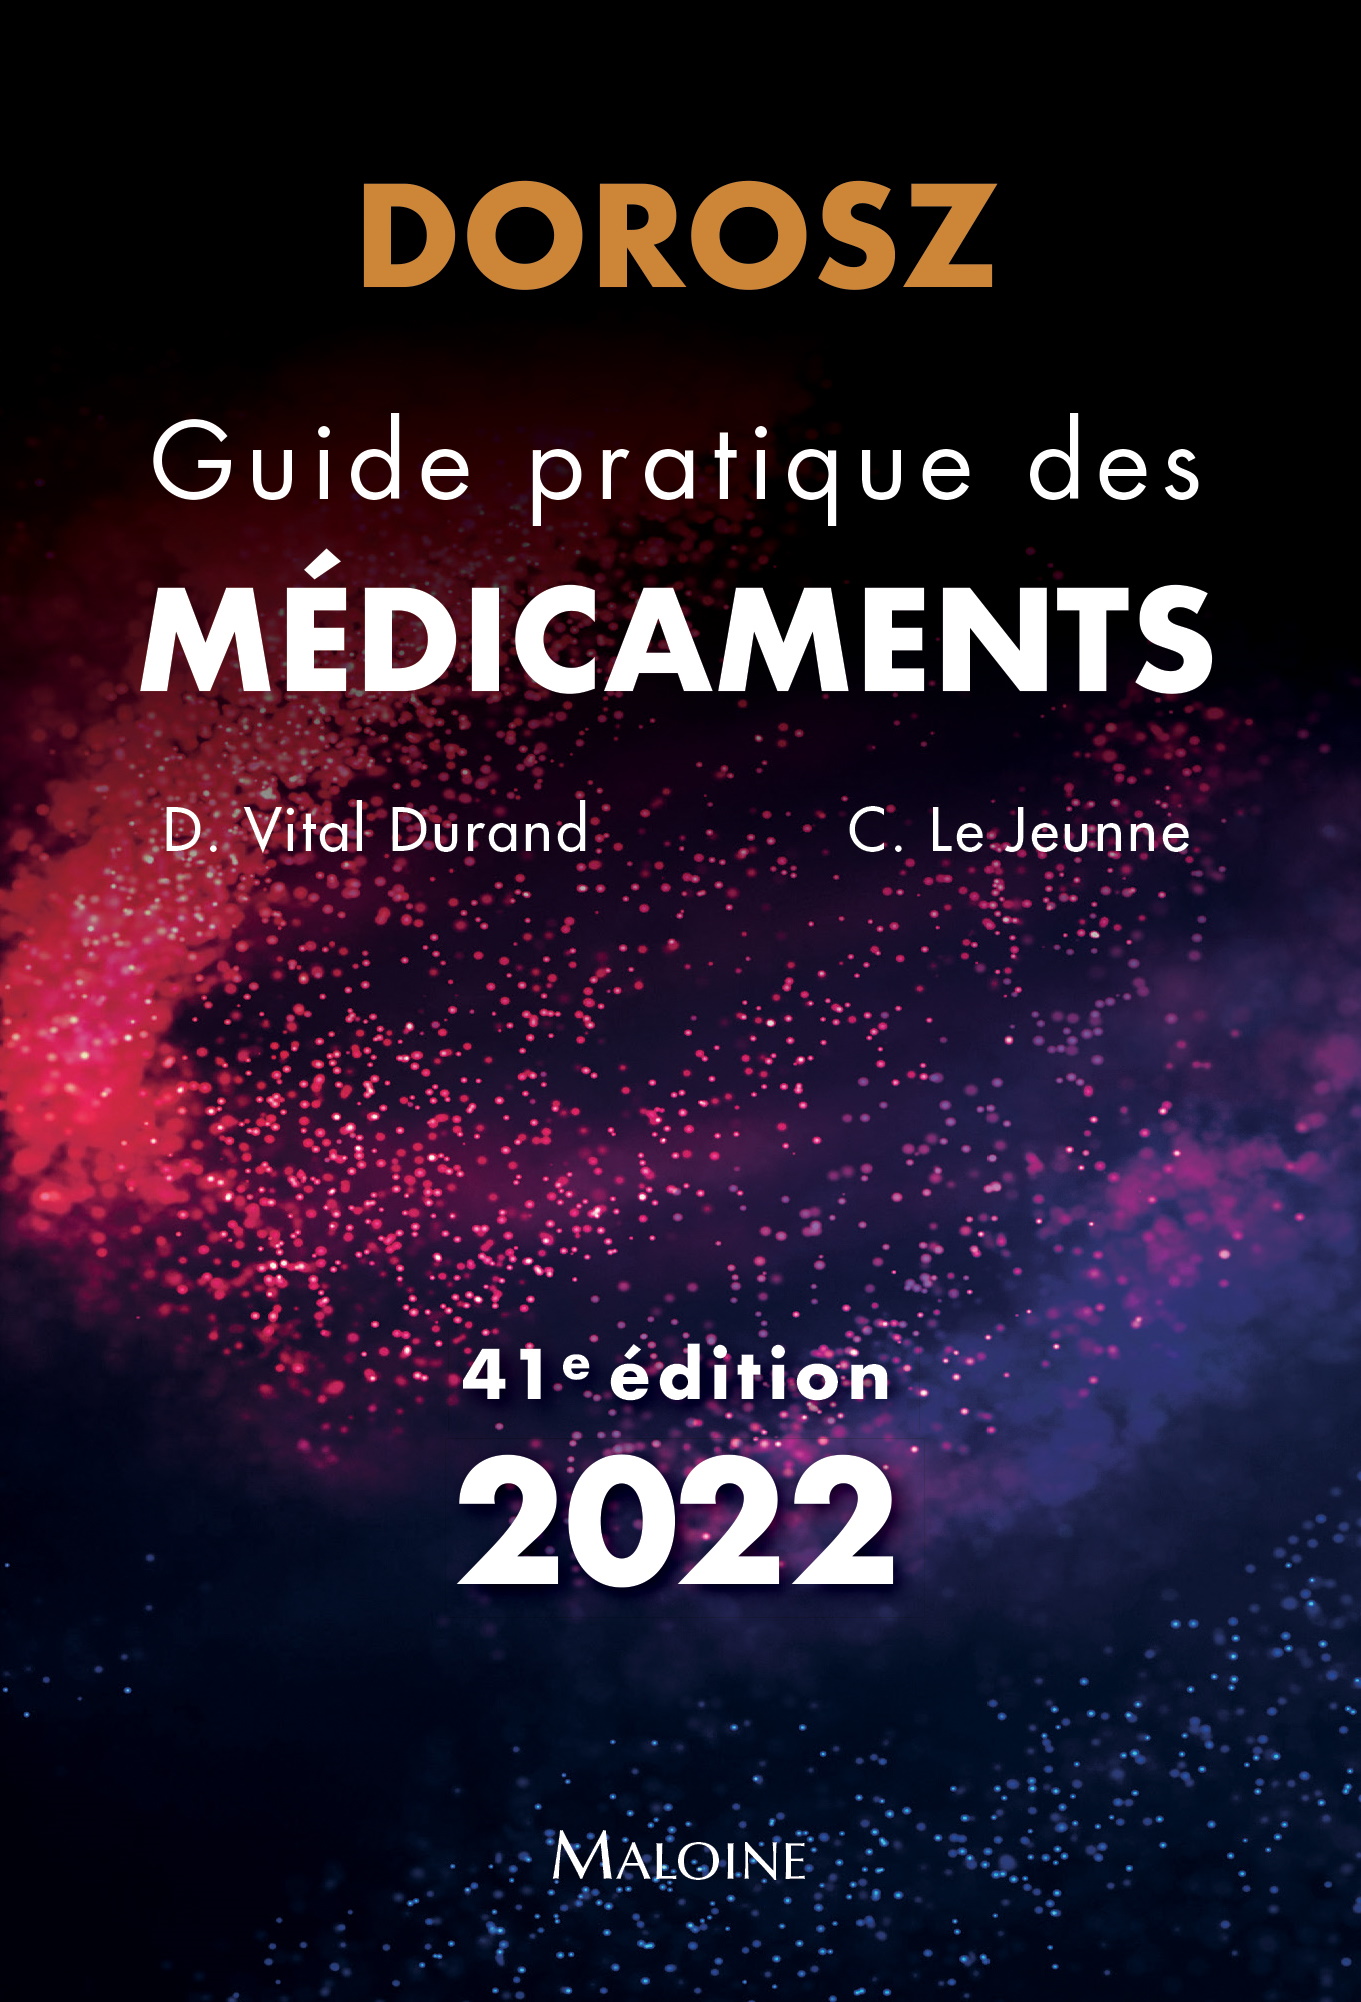 Dorosz Guide pratique des médicaments 2022, 41e éd